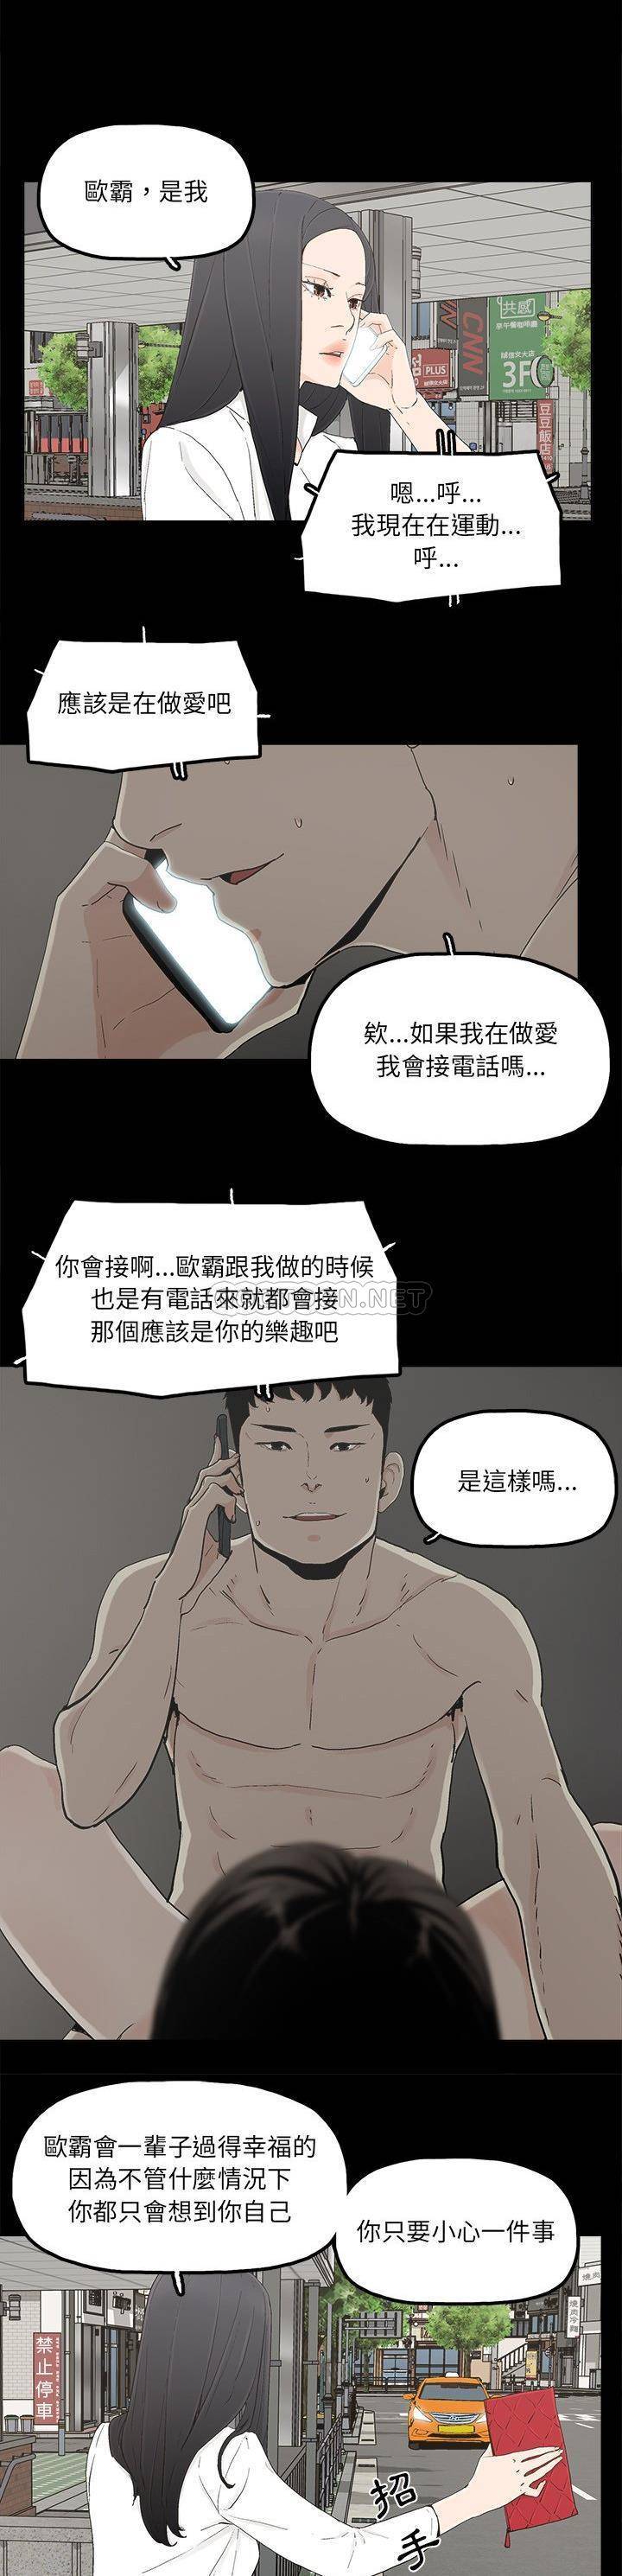 韩国污漫画 幸福 最终话 9